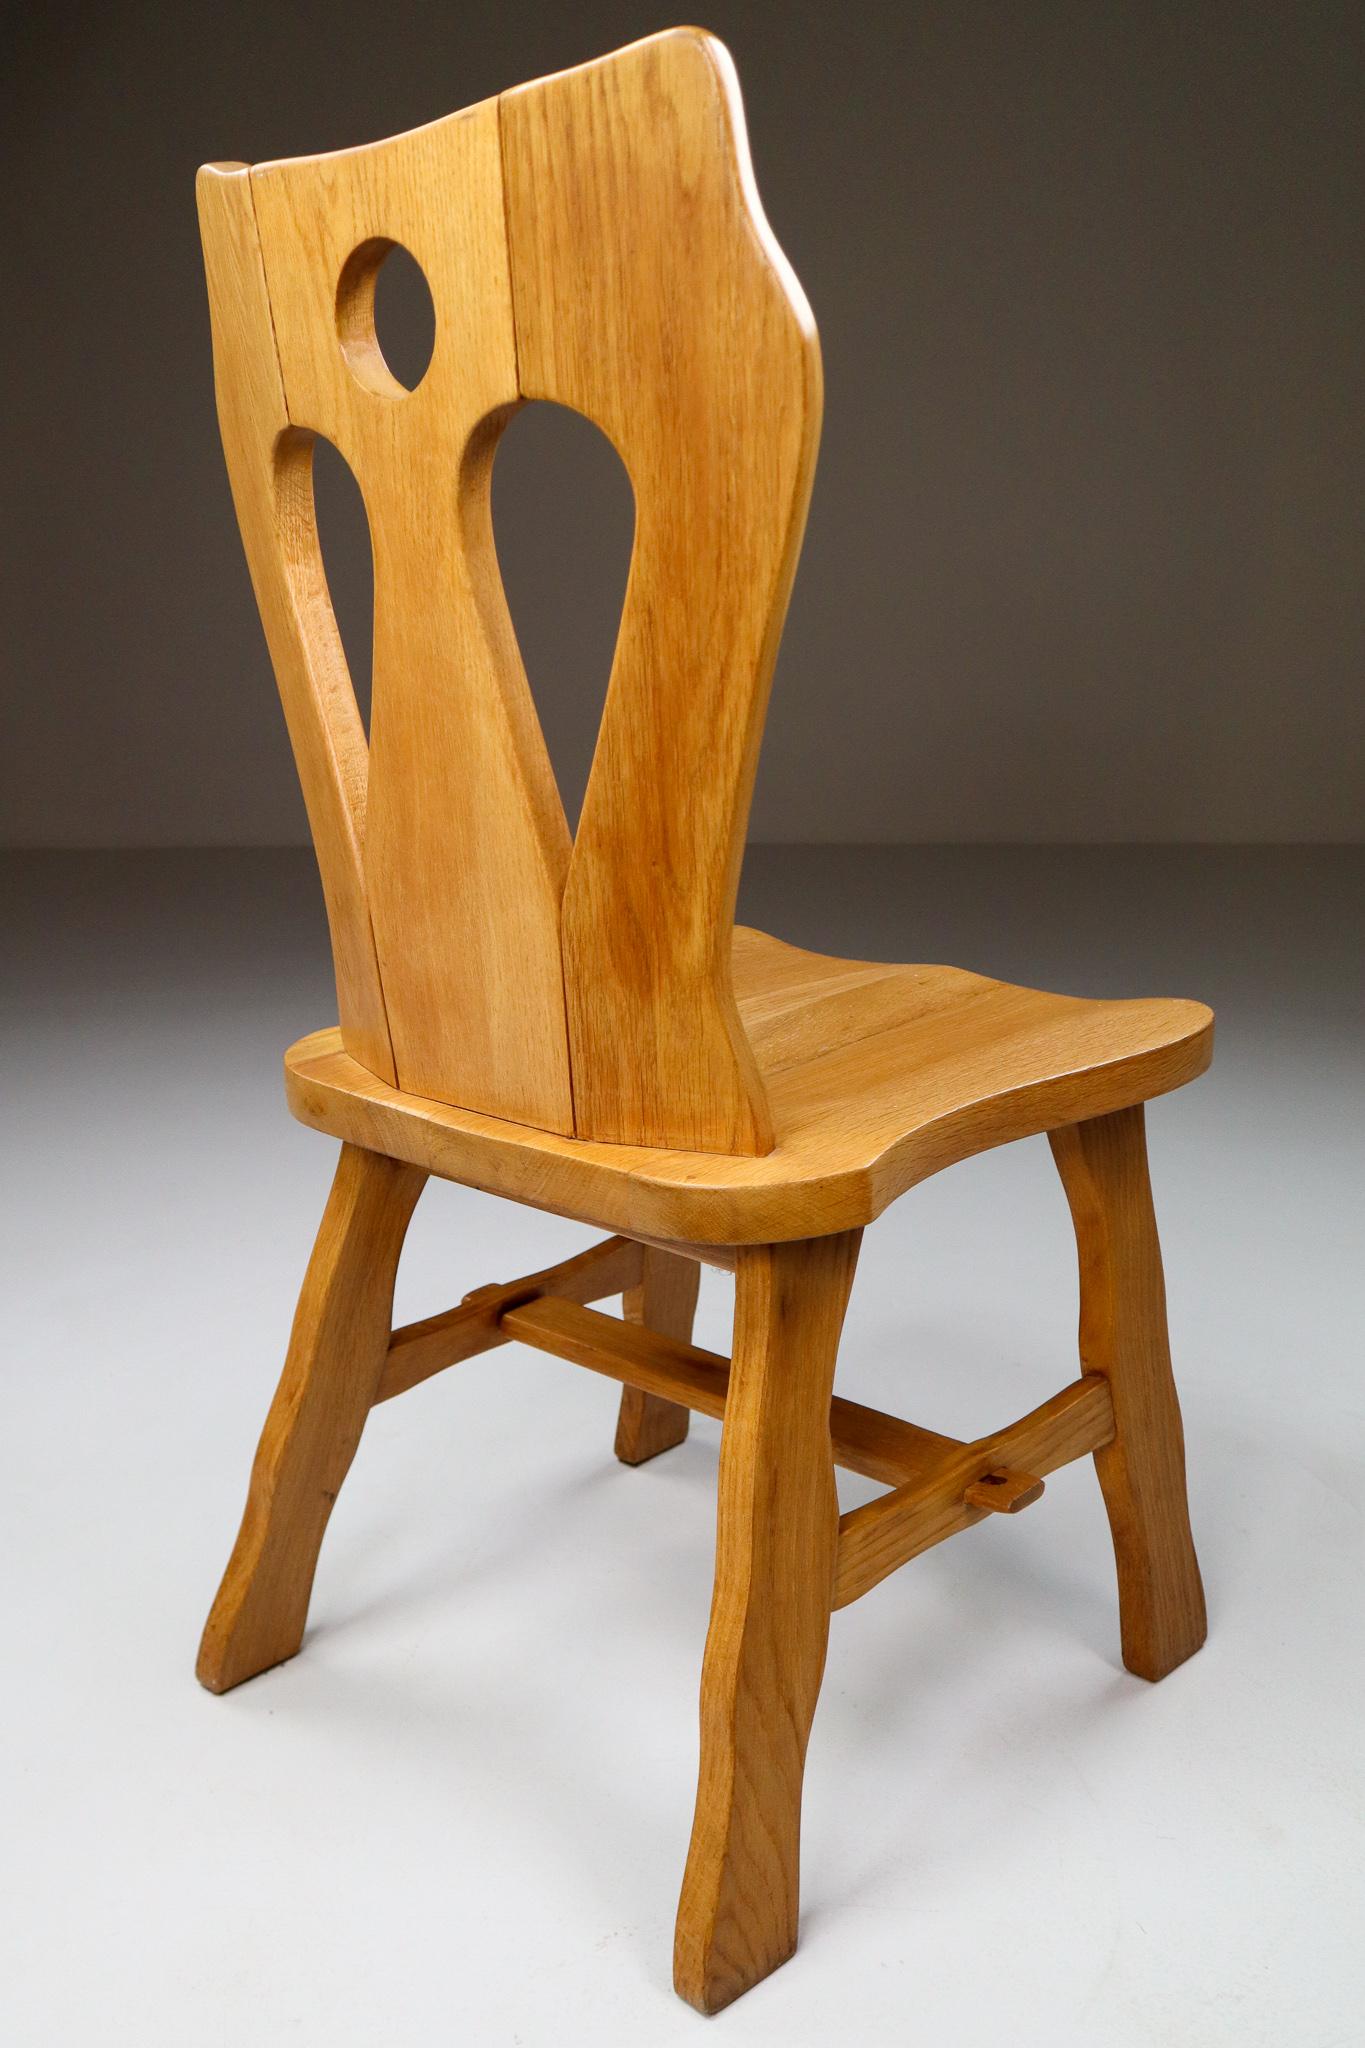 Ensemble de quatre chaises brutalistes en chêne blond, Belgique, années 1960.

Ensemble de quatre chaises de salle à manger en bois. Ces chaises sont fabriquées en chêne blond et sculptées à la main. Le savoir-faire artisanal est encore visible,